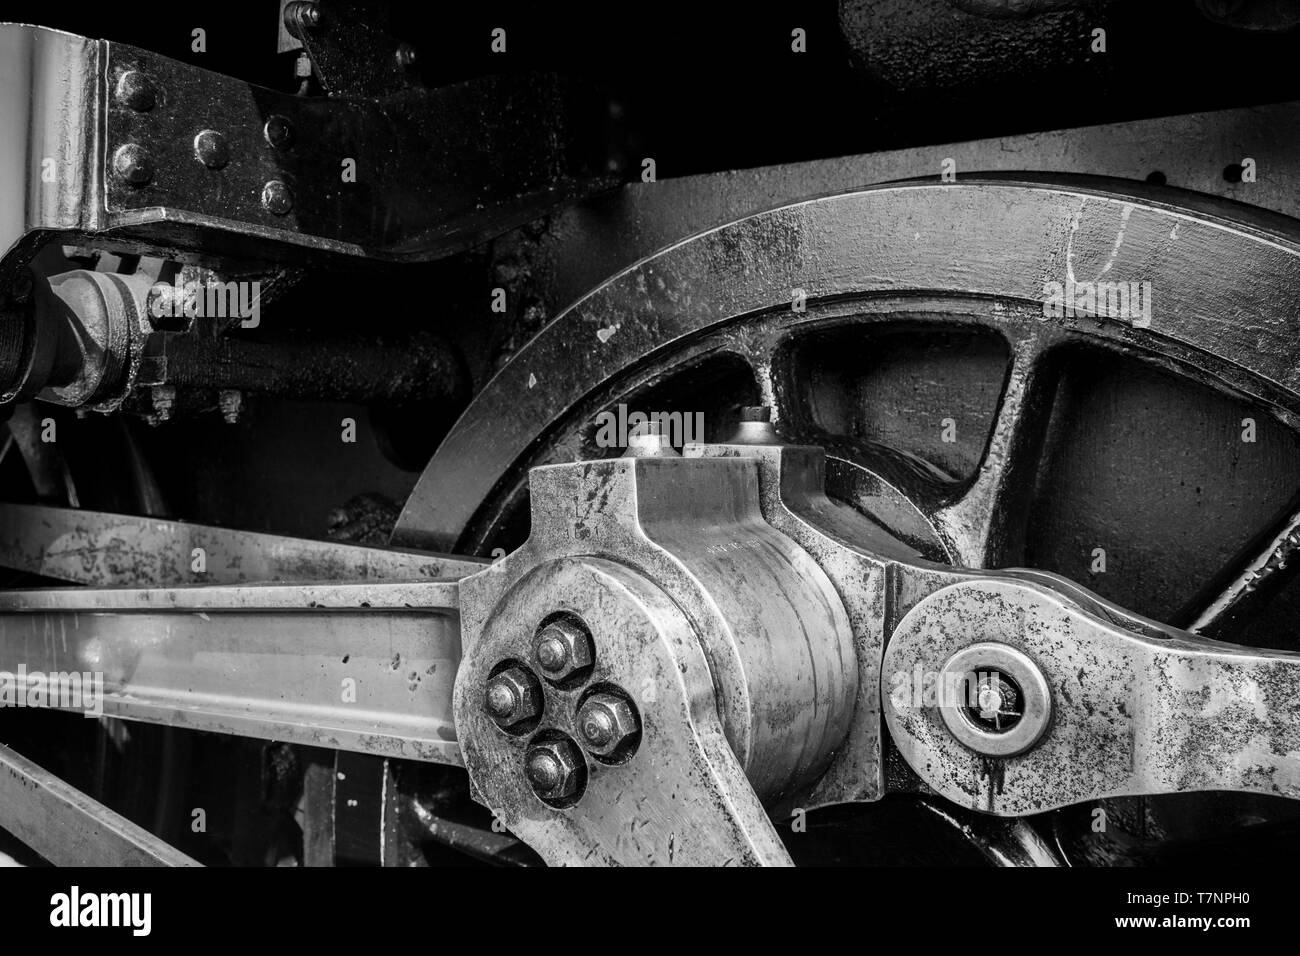 Primer plano monocromo del mecanismo de rueda motriz de locomotora de vapor británico de época. Biela para motores de vapor del Reino Unido; trenes de vapor del Reino Unido; ferrocarril Heritage. Foto de stock